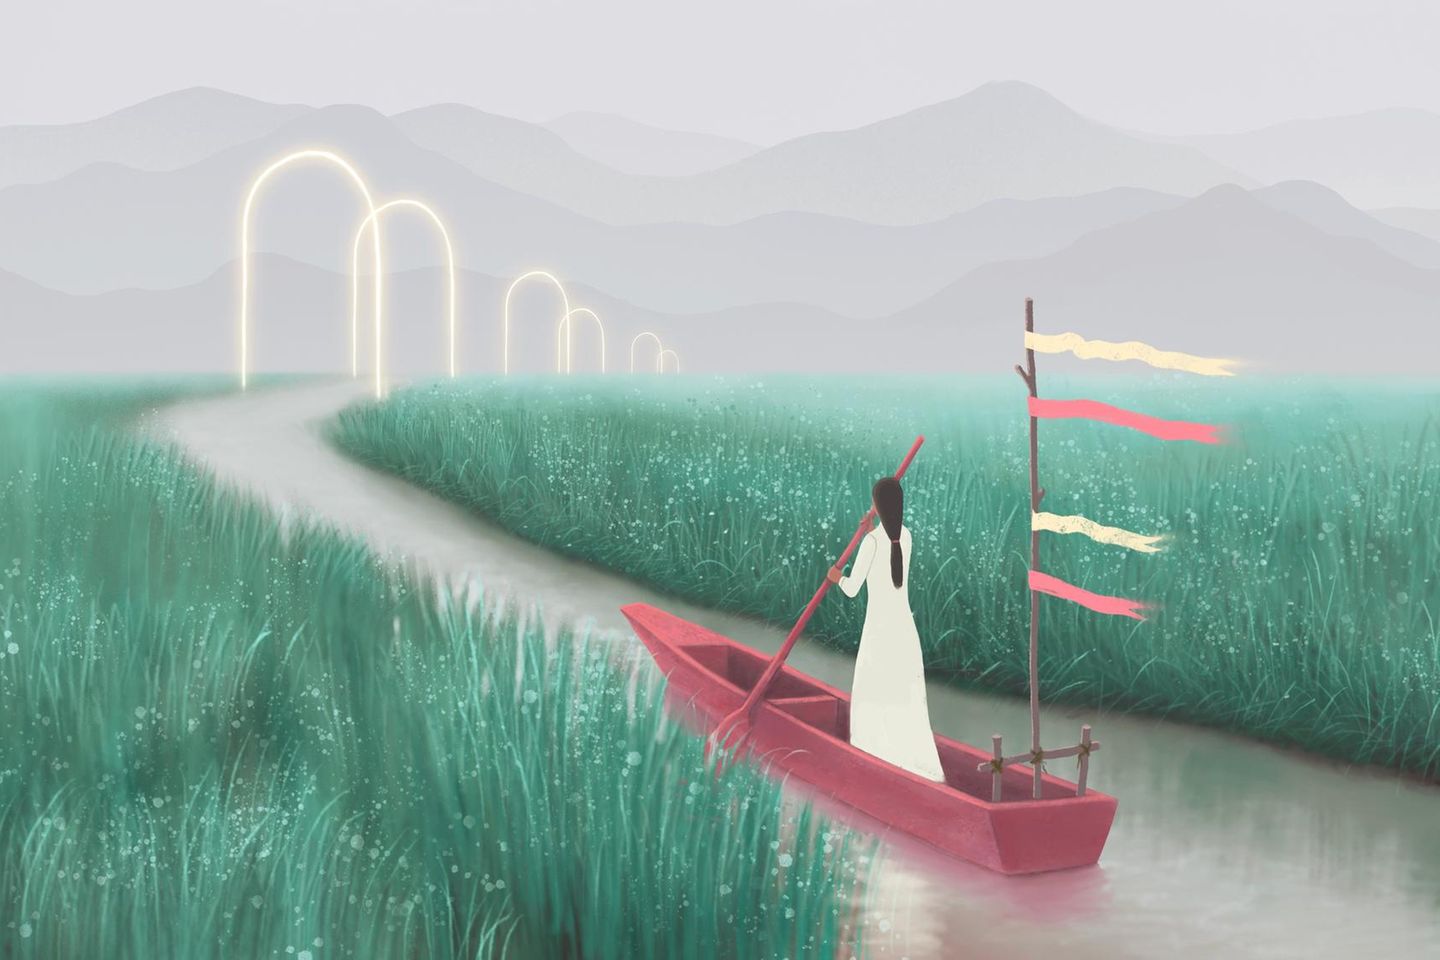 Frau auf kleinem Boot in einem ruhigen Fluss